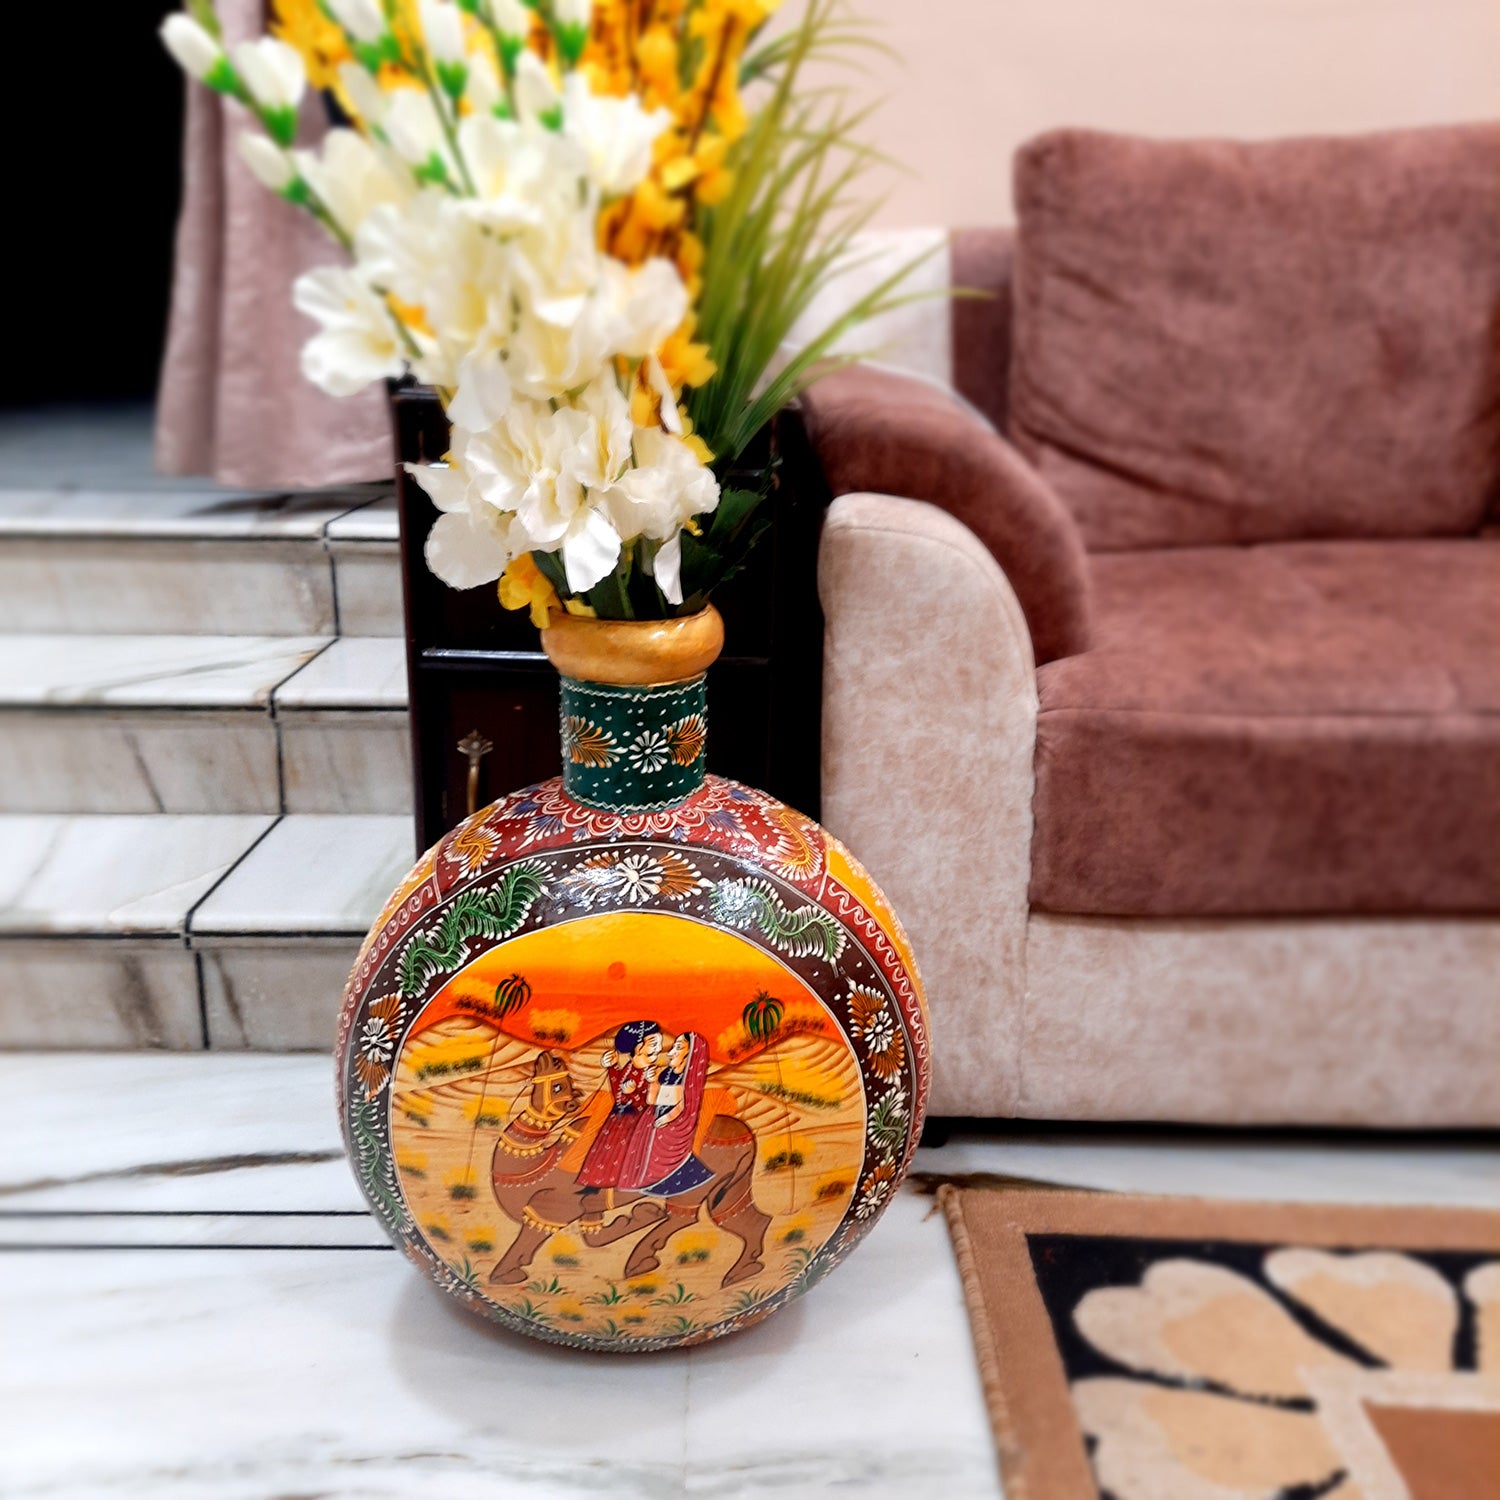 Flower Pot - Pitcher Design | Decorative Indoor Flower Pot - For Home, Table, Living room & Gift - 18 Inch - Apkamart